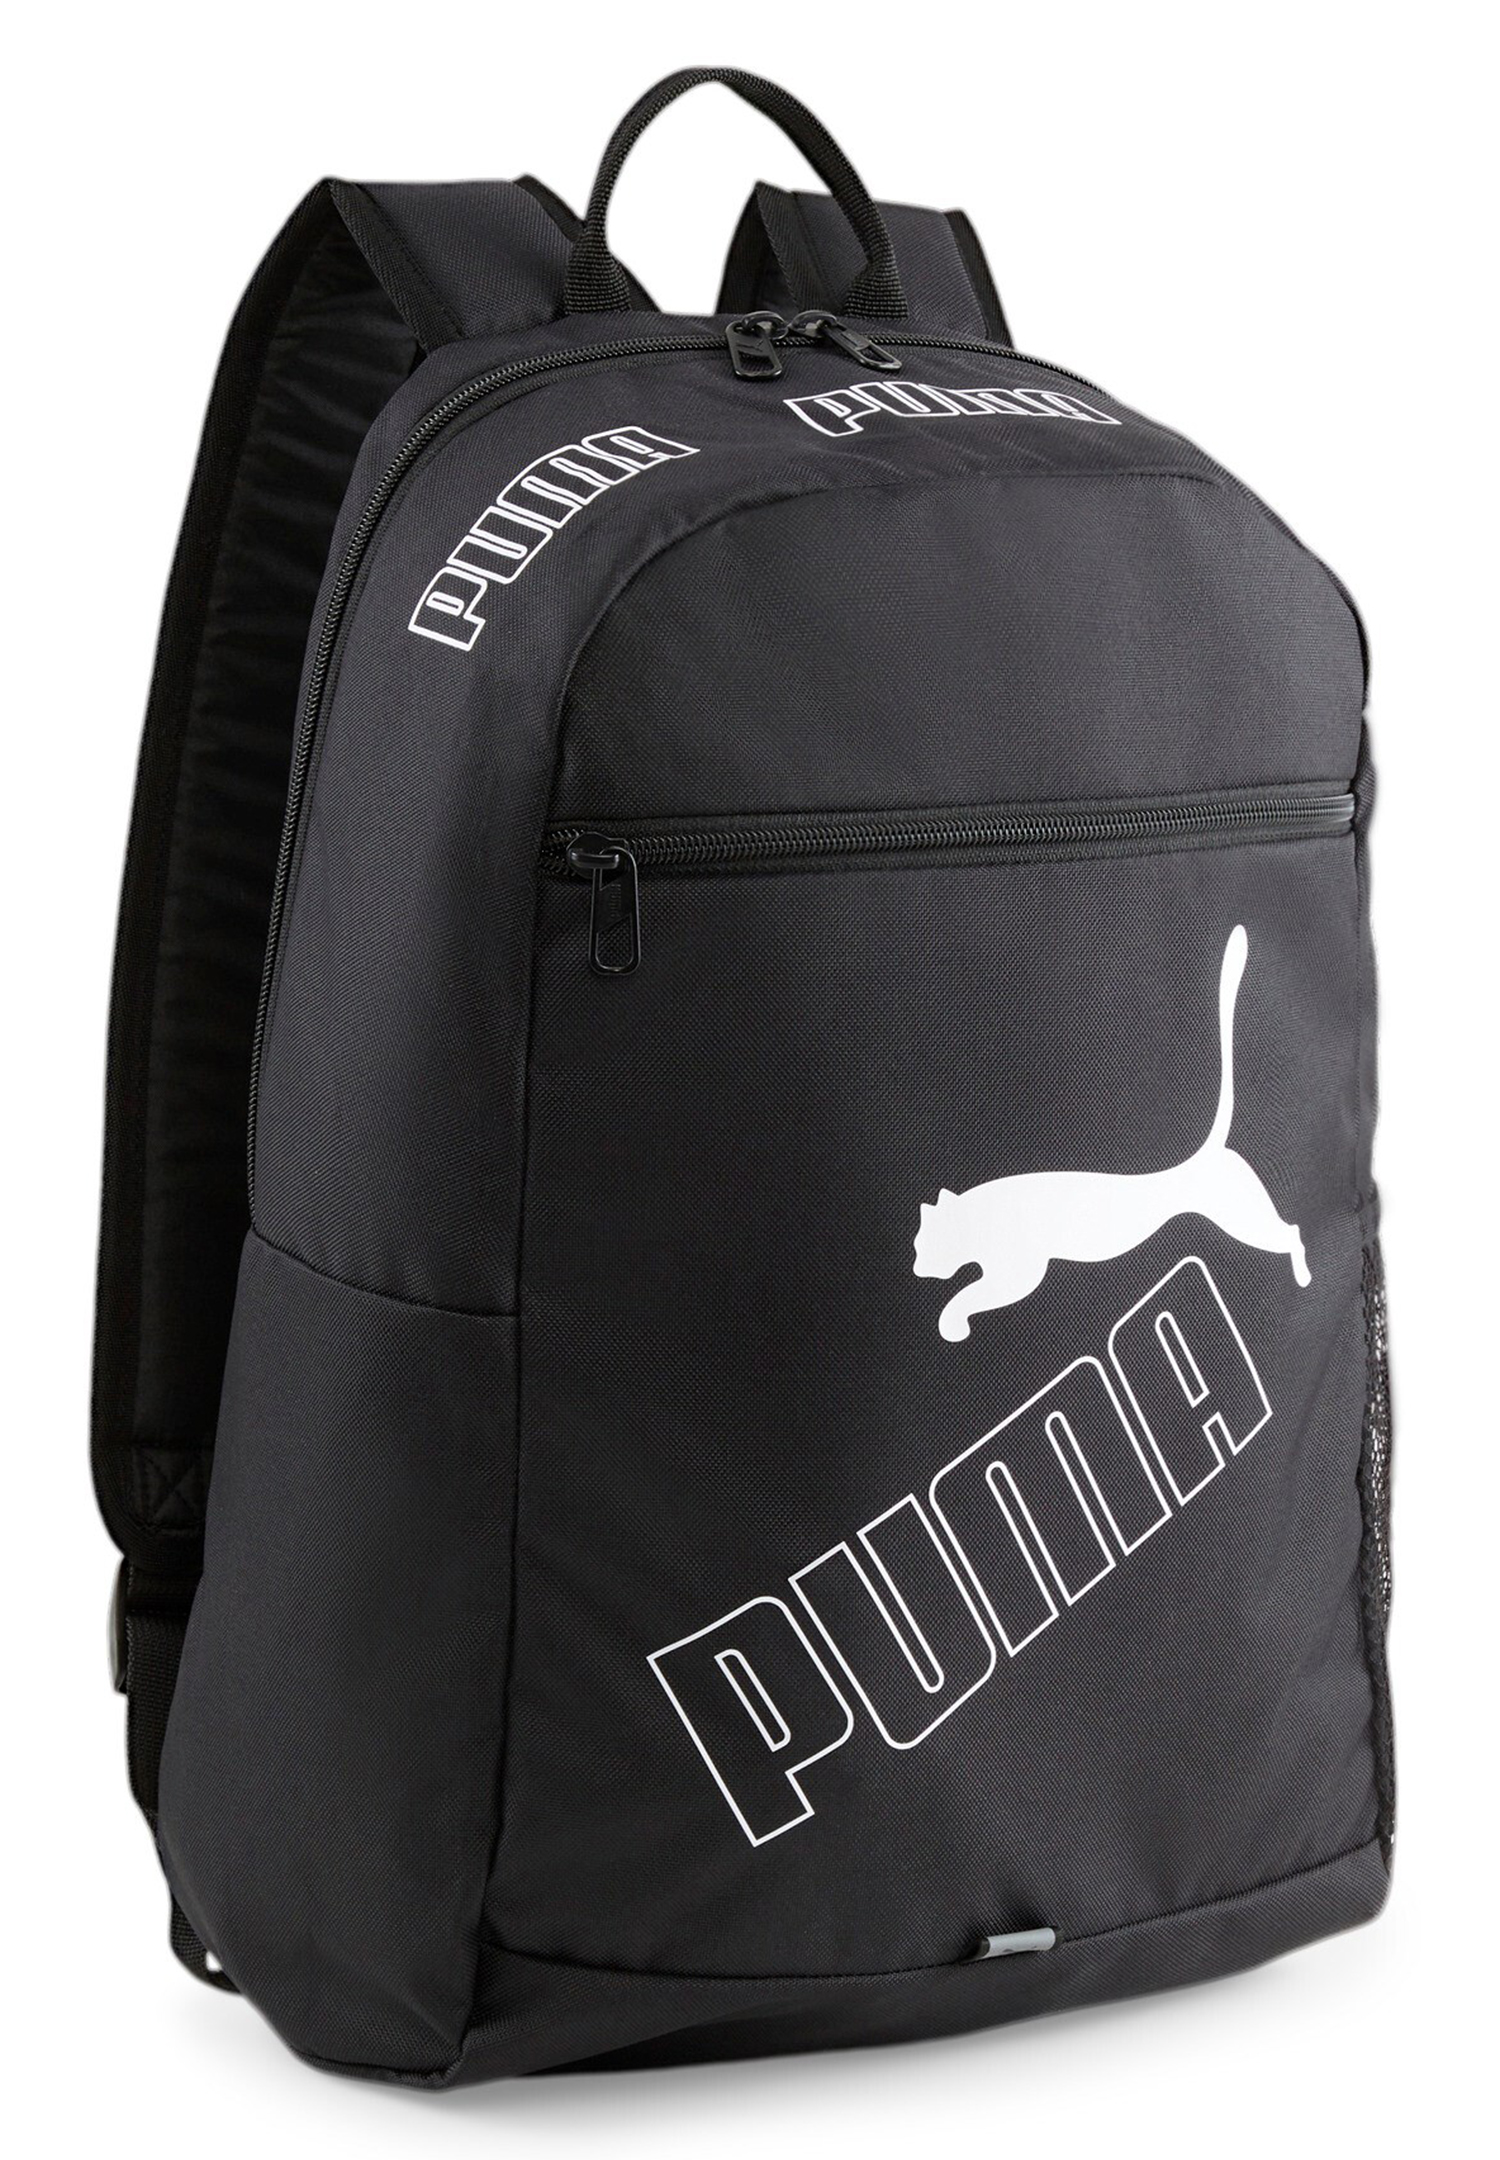 PUMA Phase Backpack II Rucksack Sport Freizeit Reise Schule 079952 01 schwarz